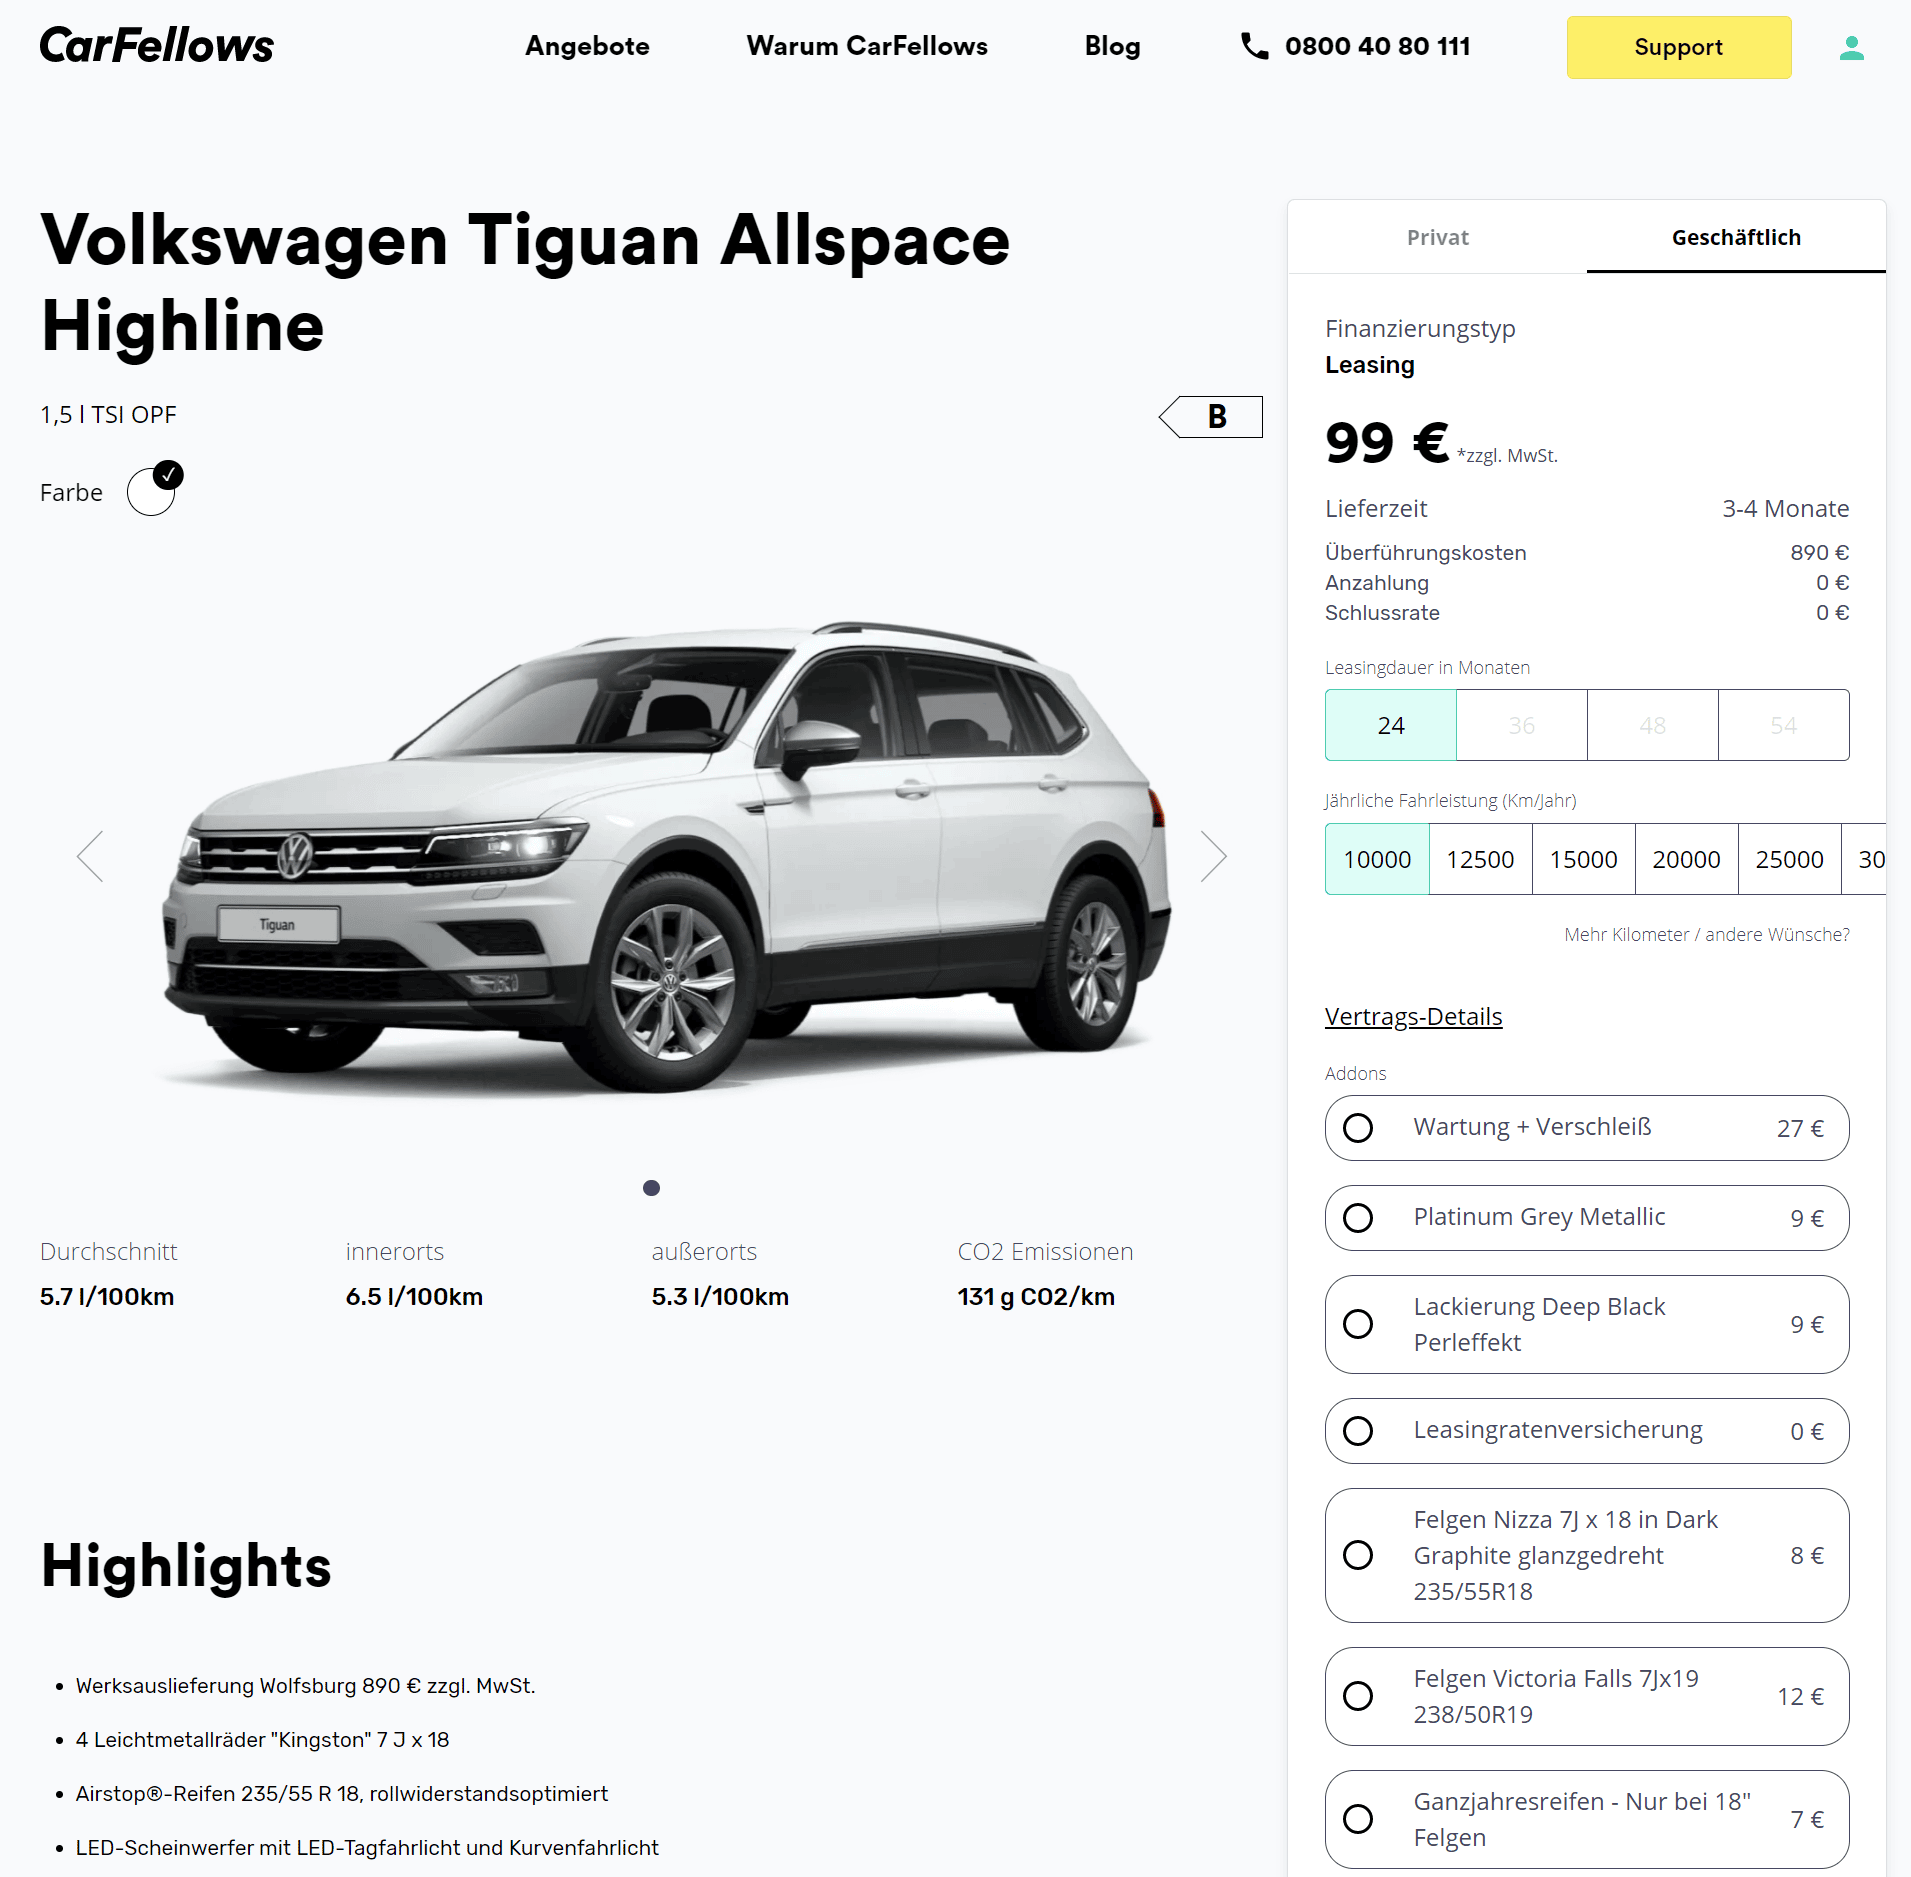 VW Tiguan Allspace Leasing für 99 € im Monat netto 